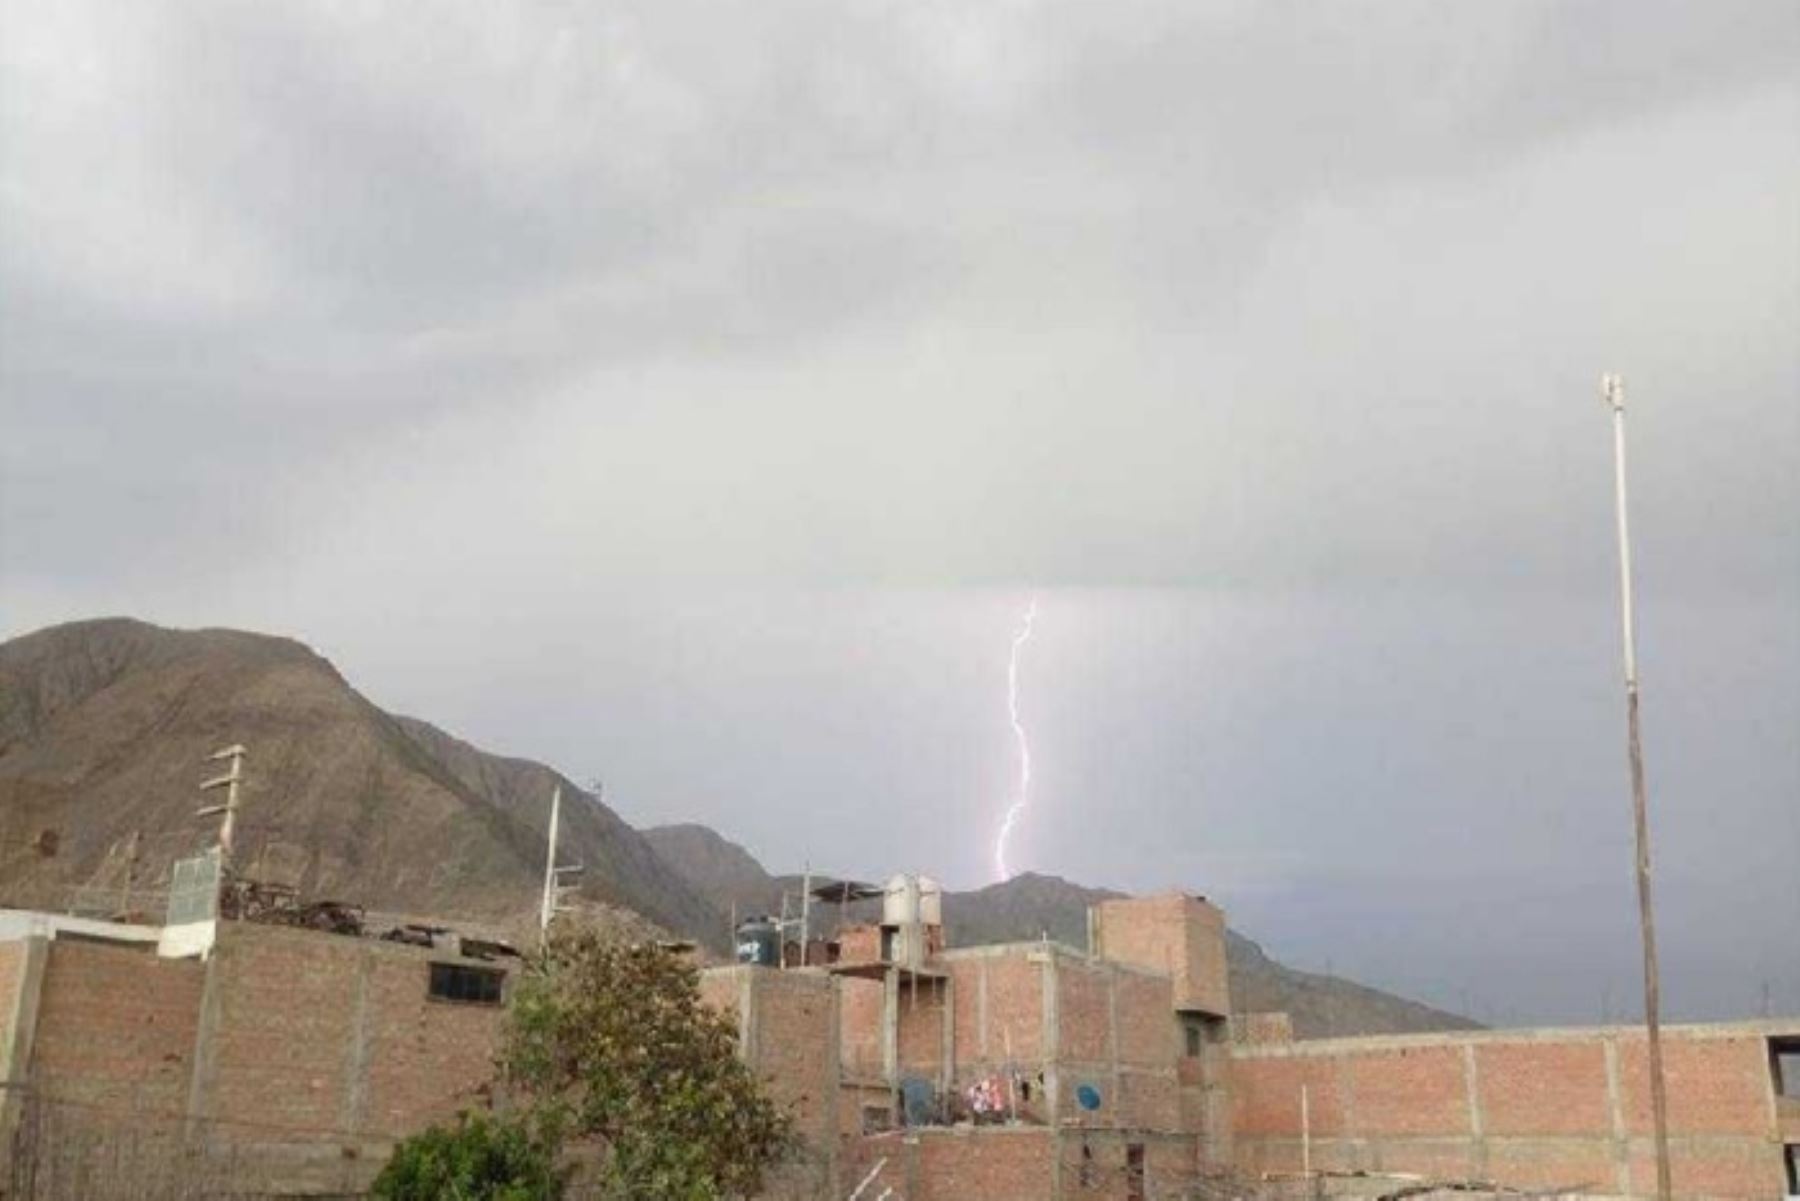 El local de la Unidad de Gestión Educativa Local (UGEL) de Huaraz, en la región Áncash; fue impactado por un rayo en medio de una tormenta eléctrica que soportó en la víspera esta ciudad.